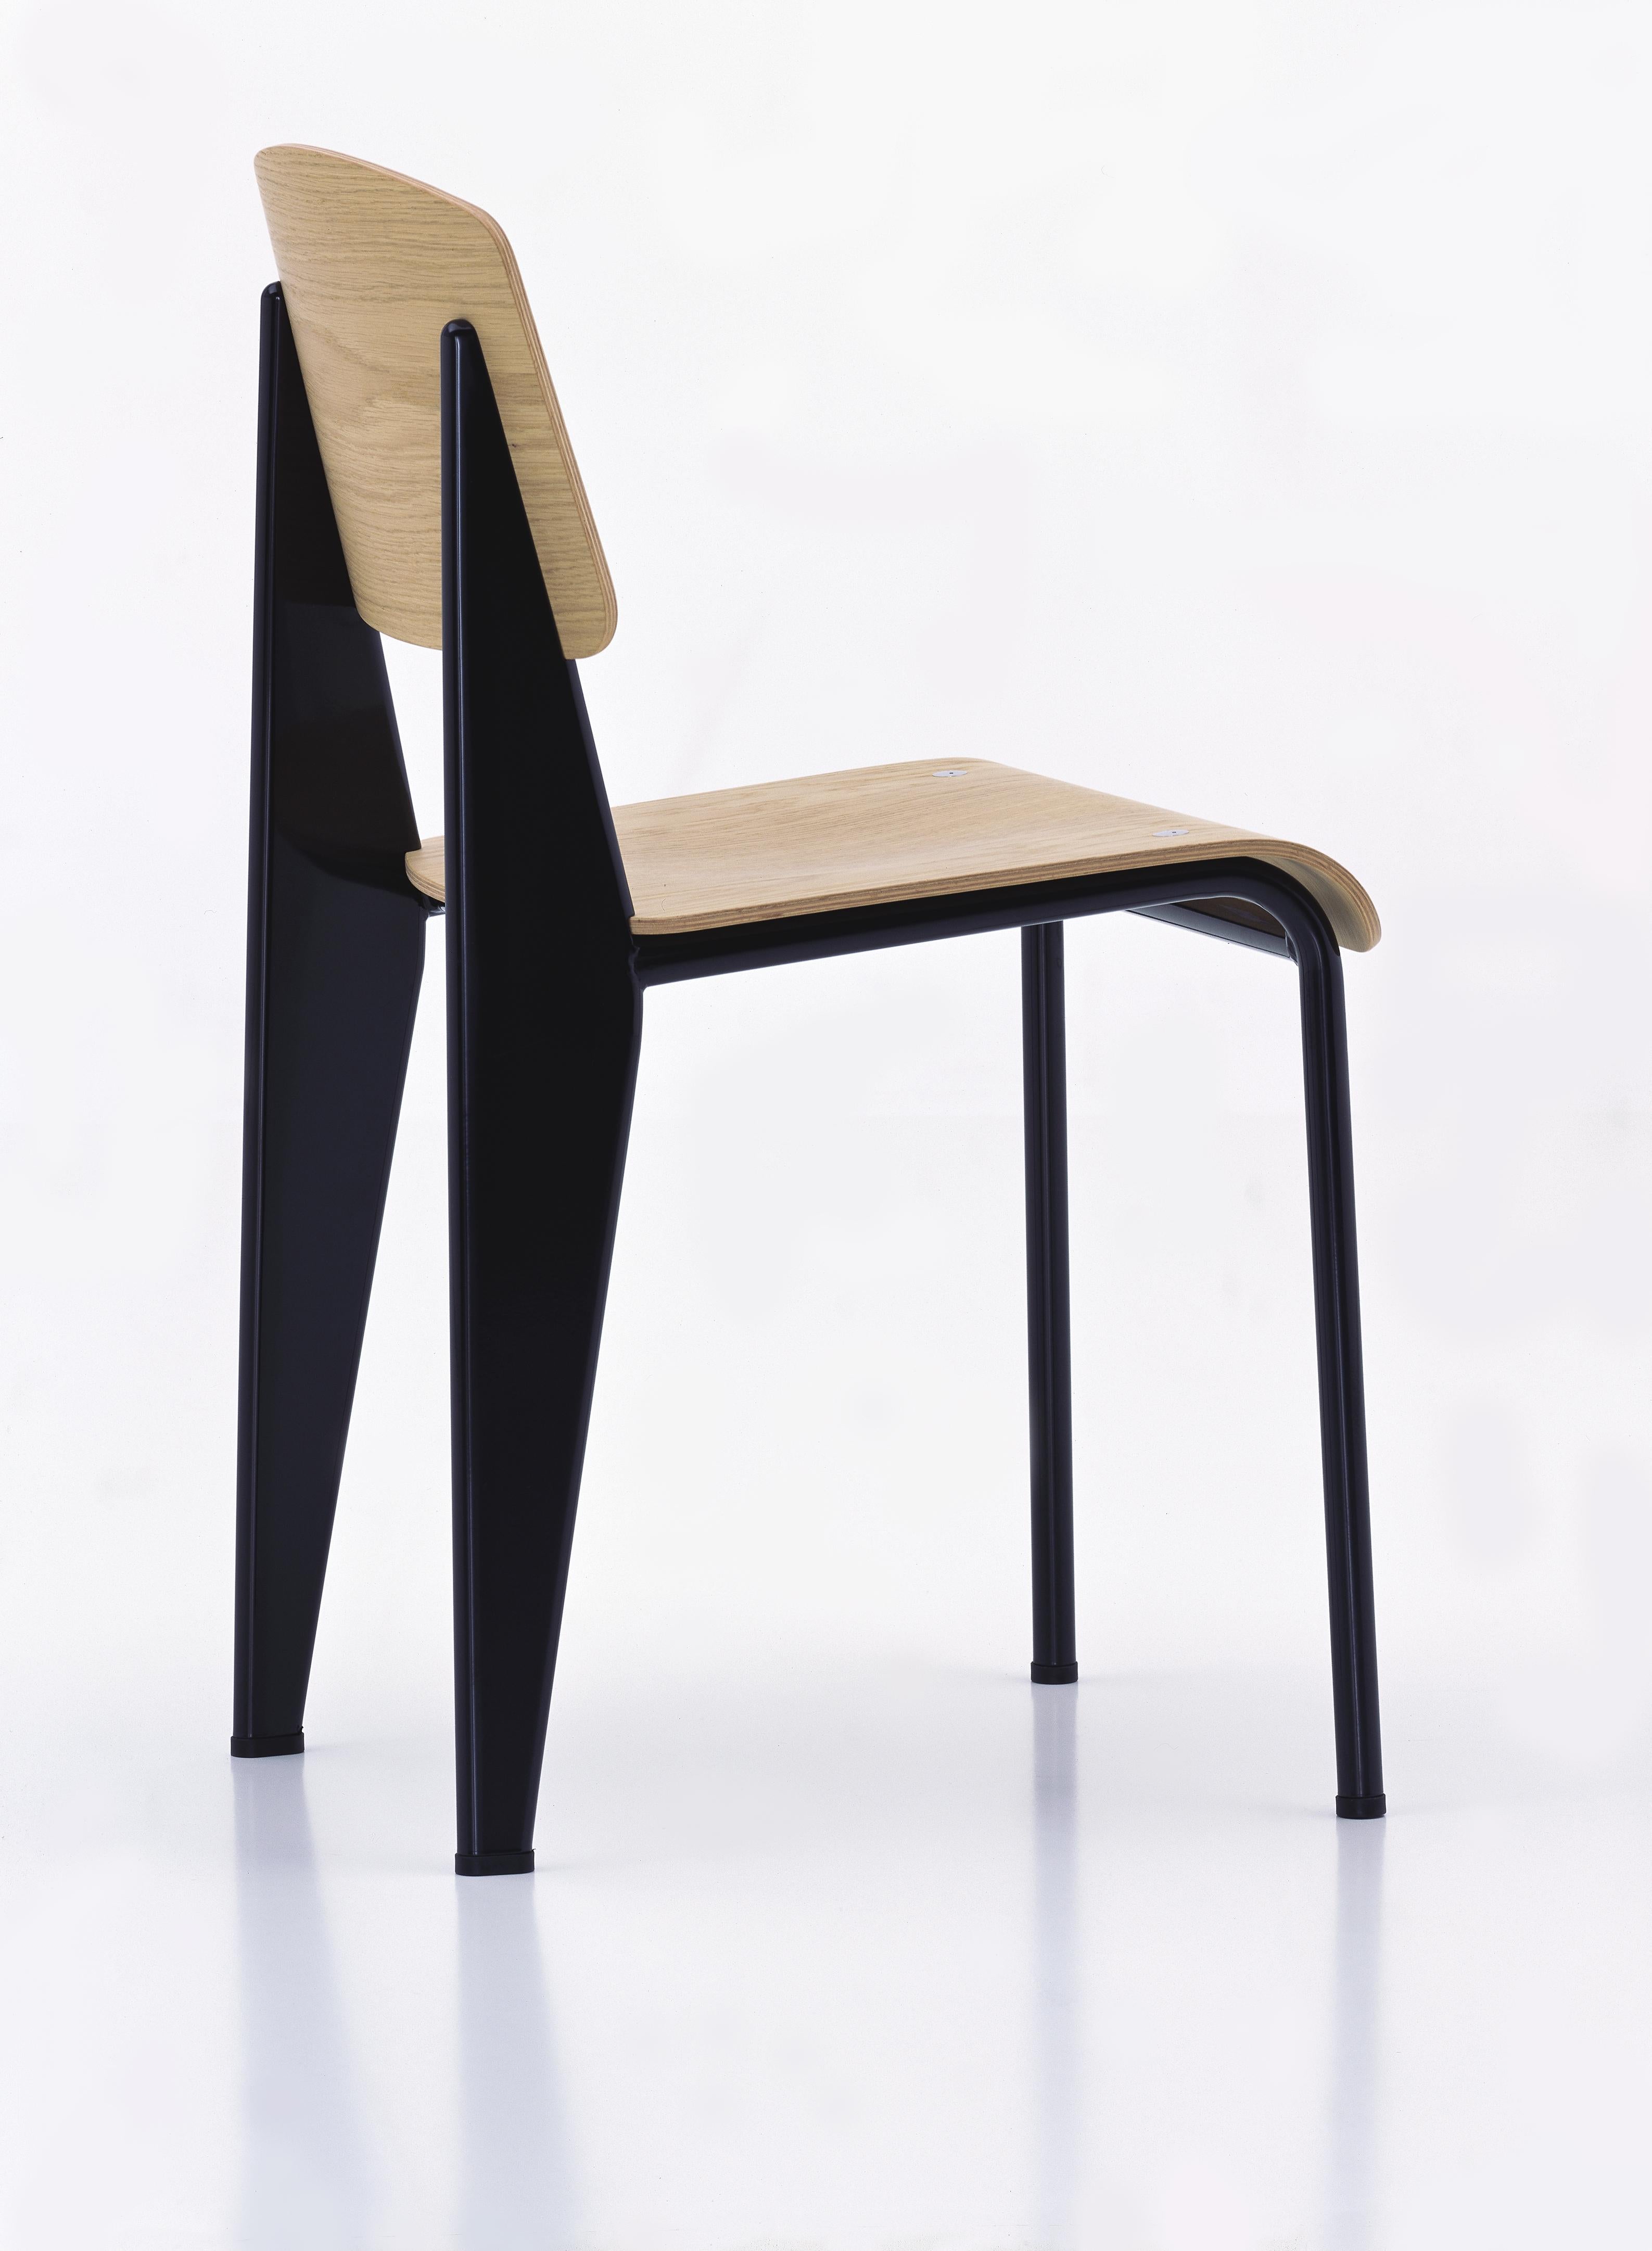 Jean Prouvé Standardstuhl aus Eiche natur und schwarzem Metall für Vitra. Der Standard-Stuhl ist ein frühes Meisterwerk des französischen Designers und Ingenieurs Jean Prouvé. Ursprünglich 1934 entworfen, entwickelte sich der Standard zu einem der